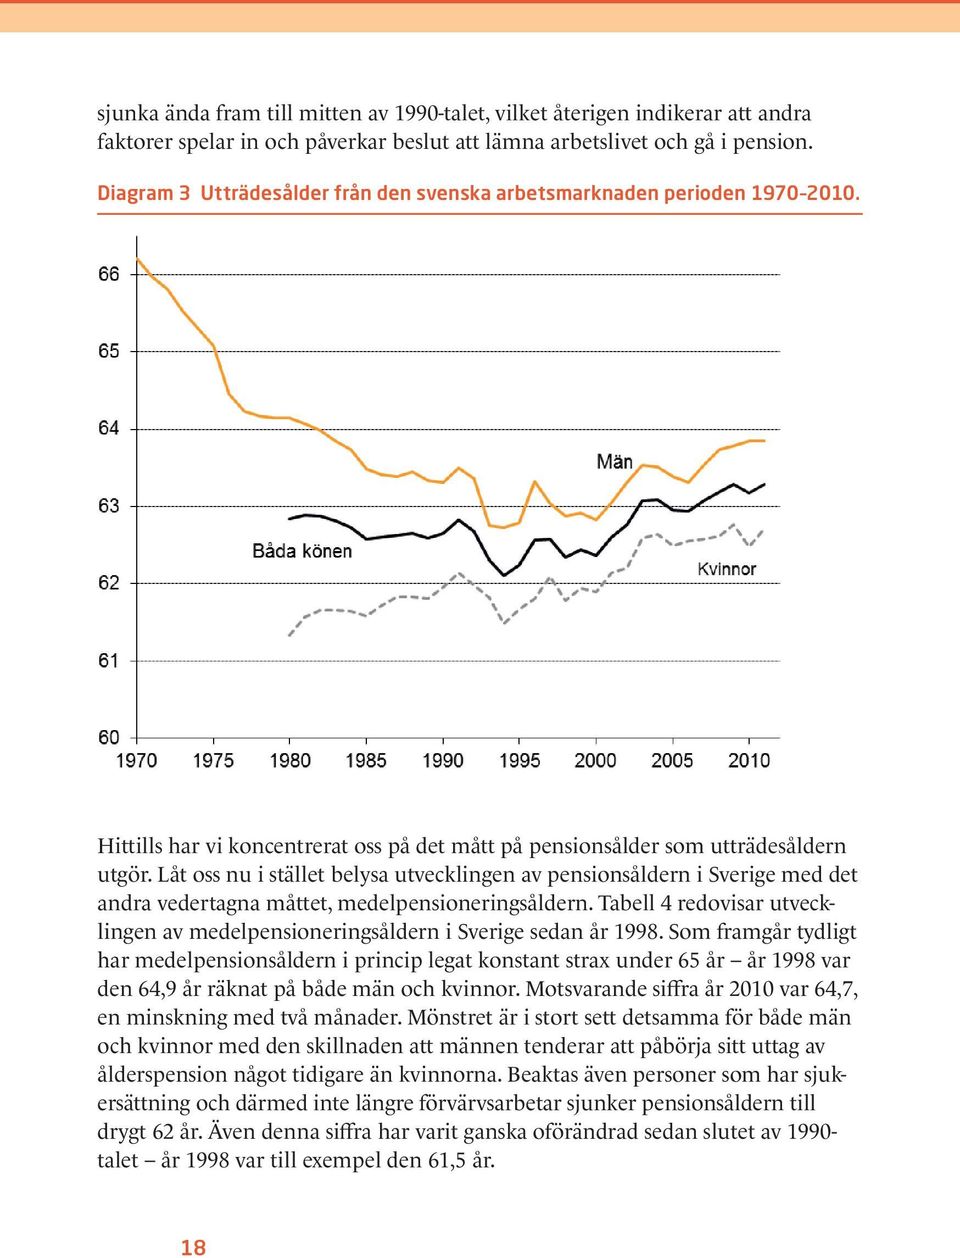 Låt oss nu i stället belysa utvecklingen av pensionsåldern i Sverige med det andra vedertagna måttet, medelpensioneringsåldern.